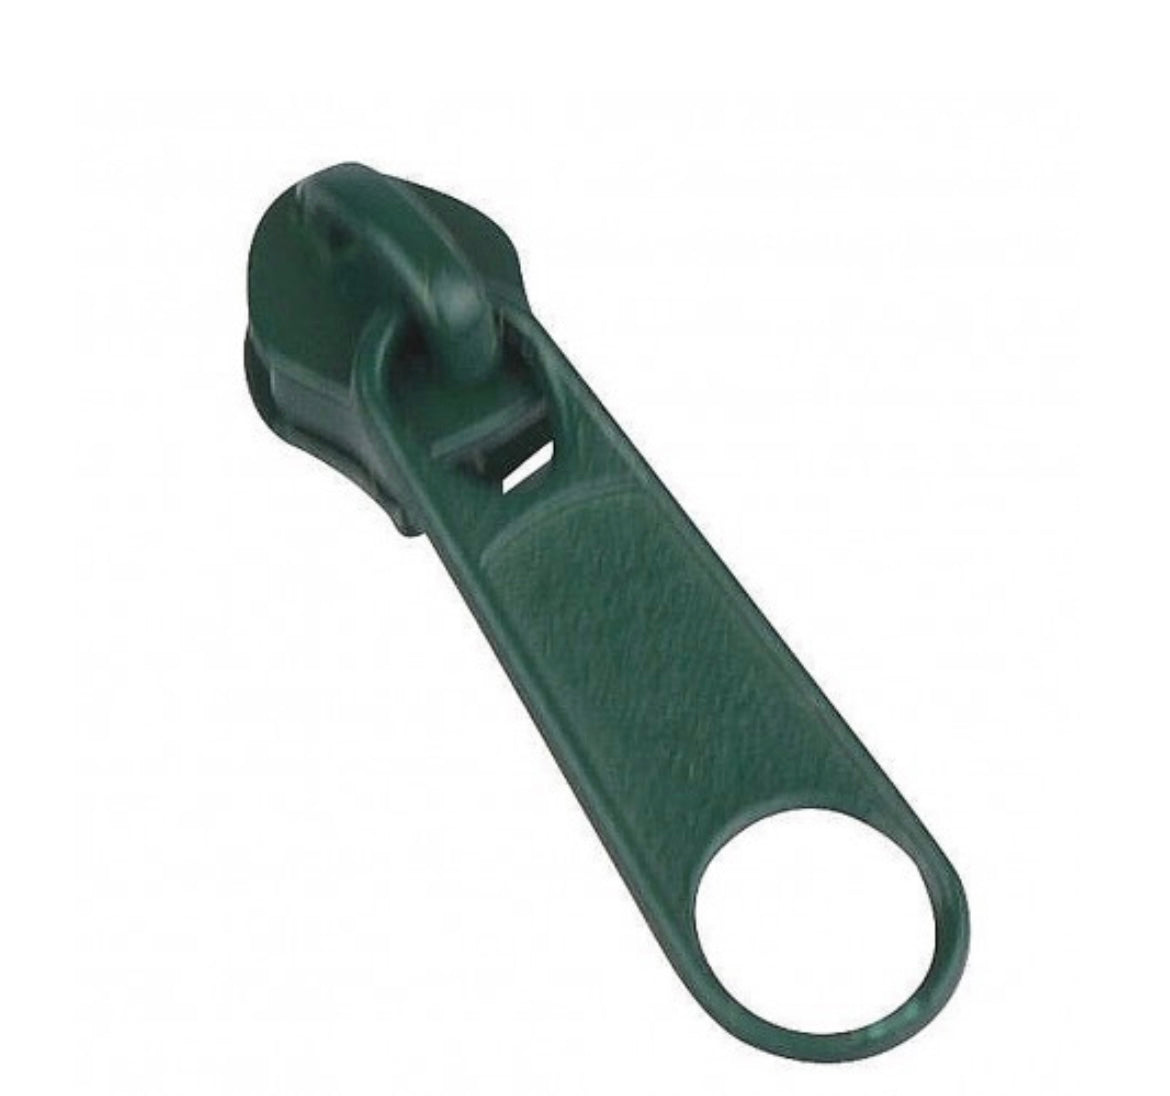 Schieber / Zipper für Endlosreißverschluss 3mm dunkelgrün